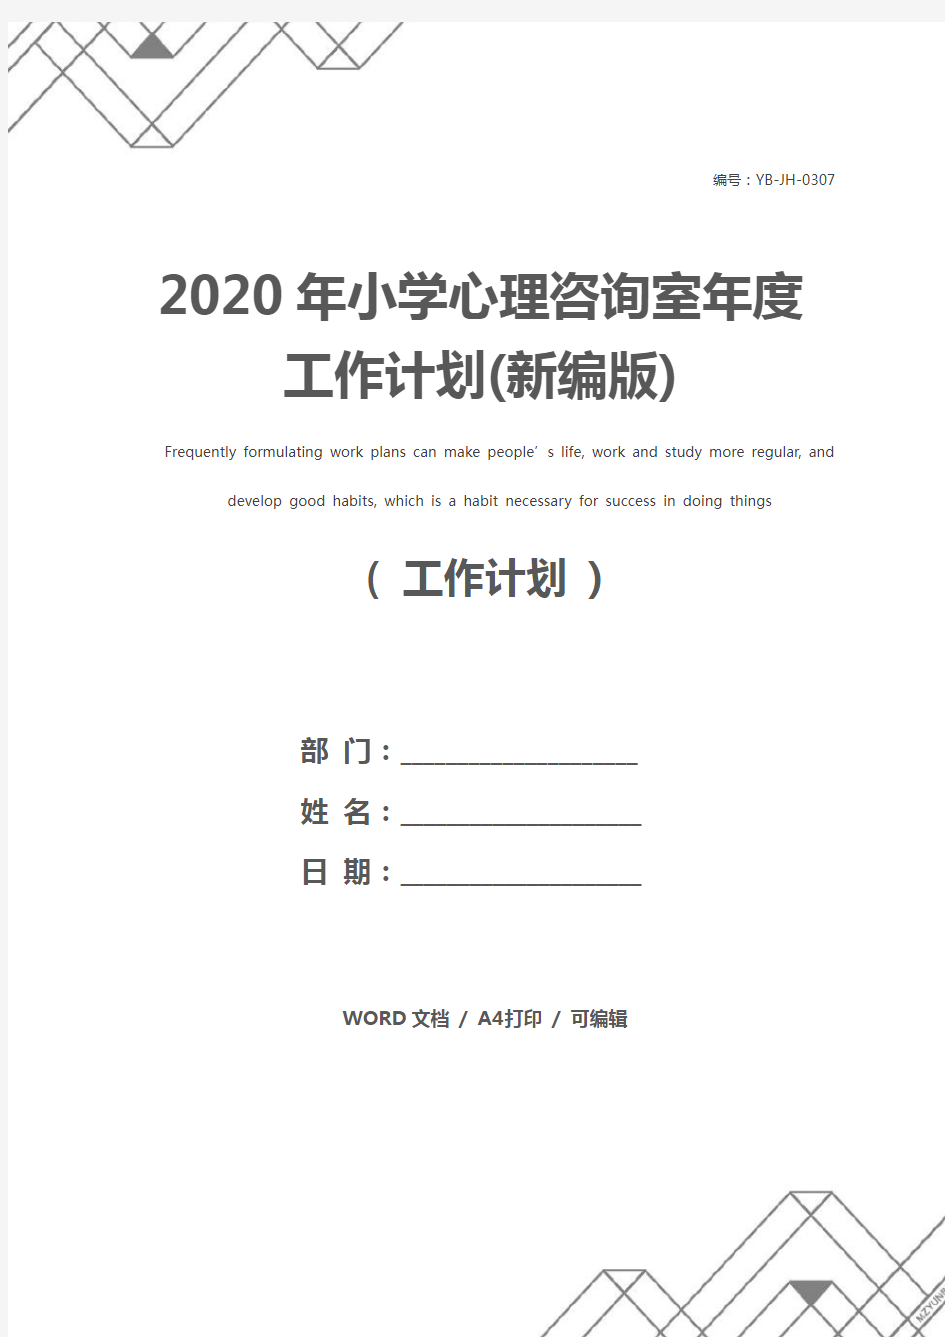 2020年小学心理咨询室年度工作计划(新编版)